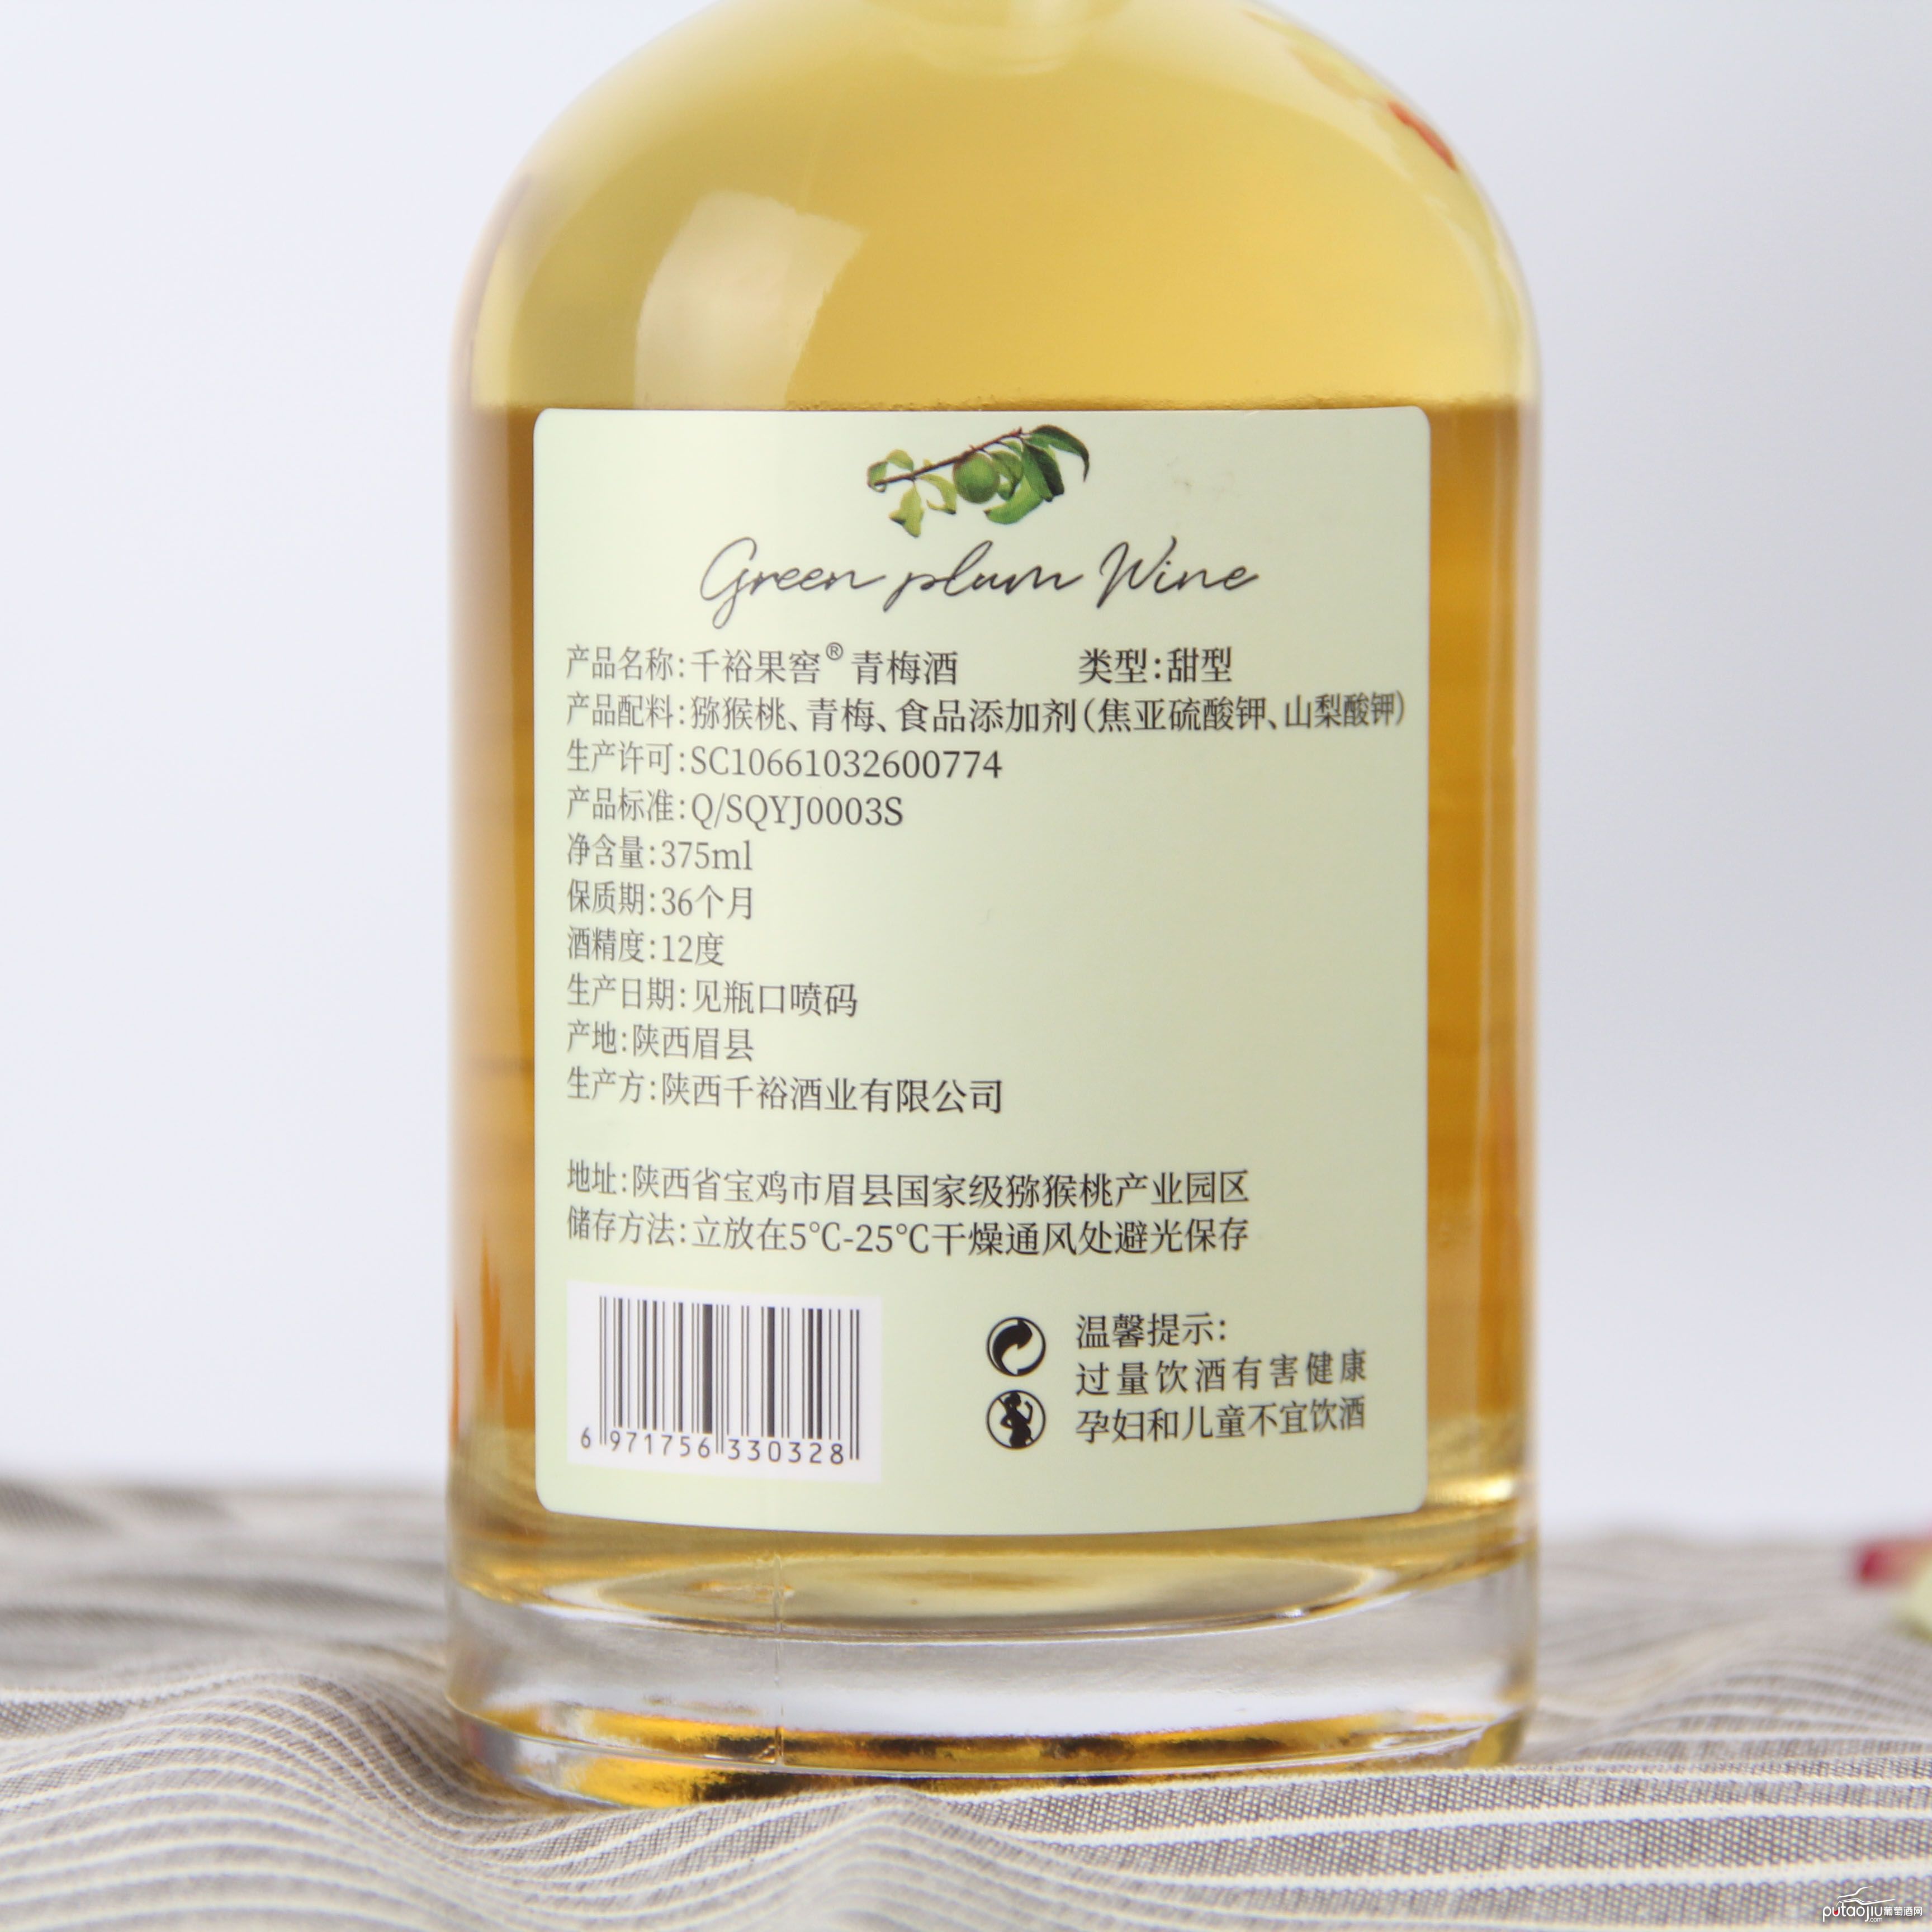 中国陕西产区千裕果窖青梅酒